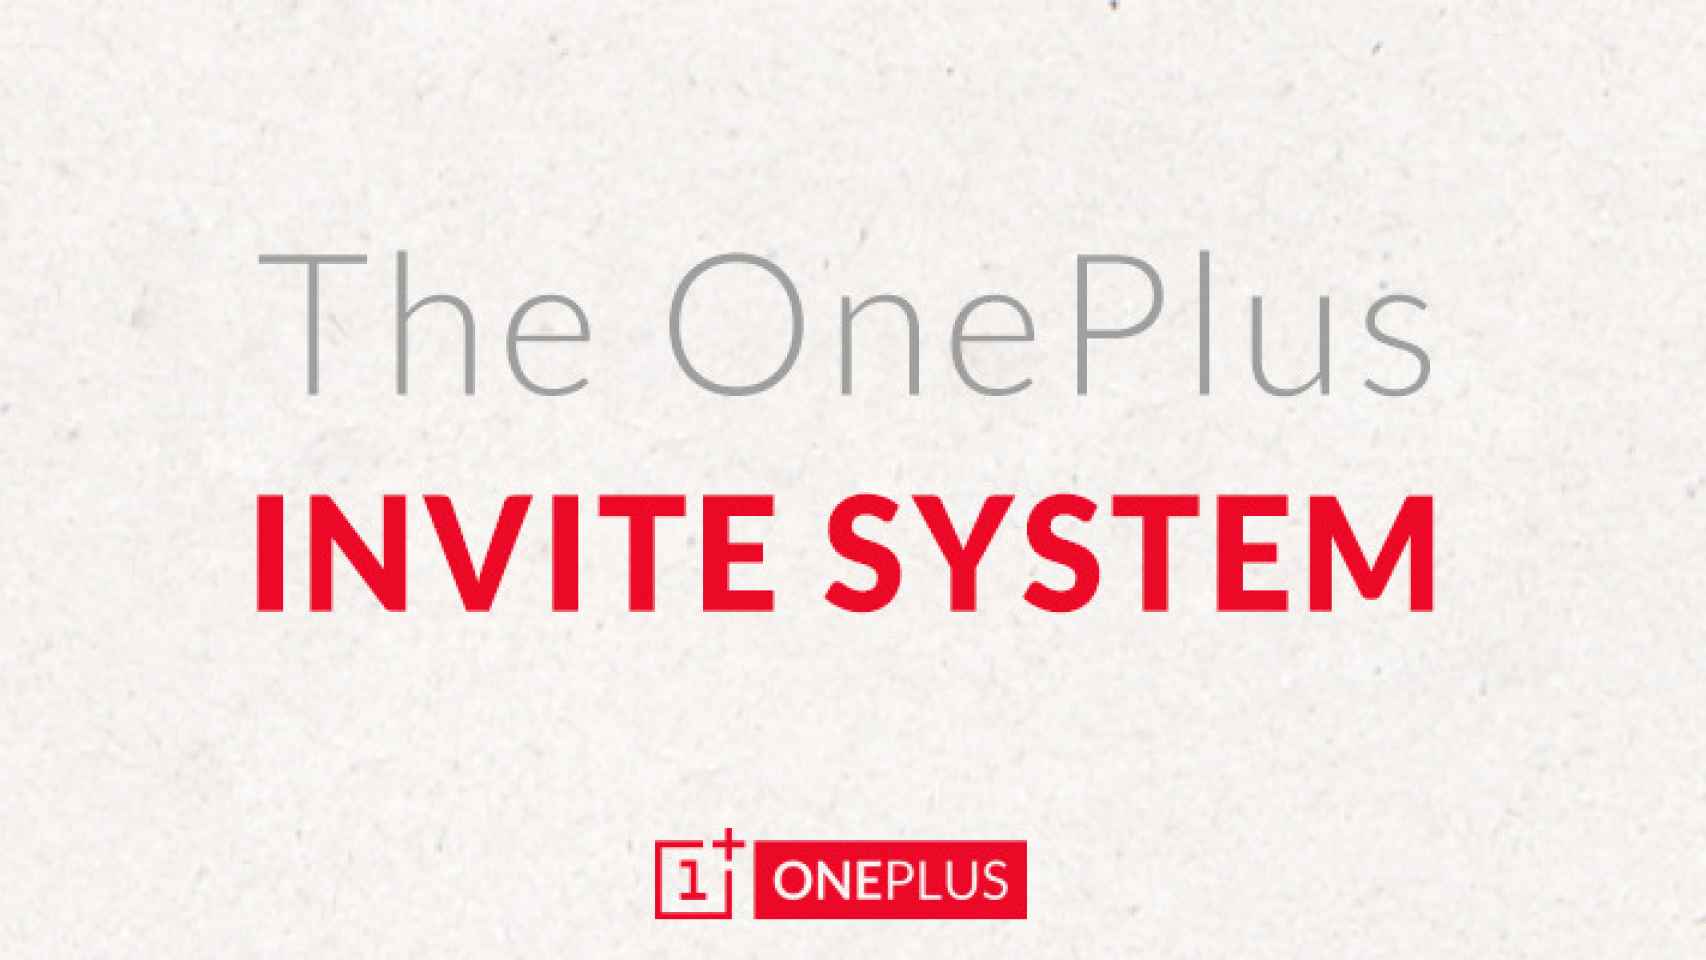 OnePlus explica como funcionará el sistema de invitaciones para comprar el One